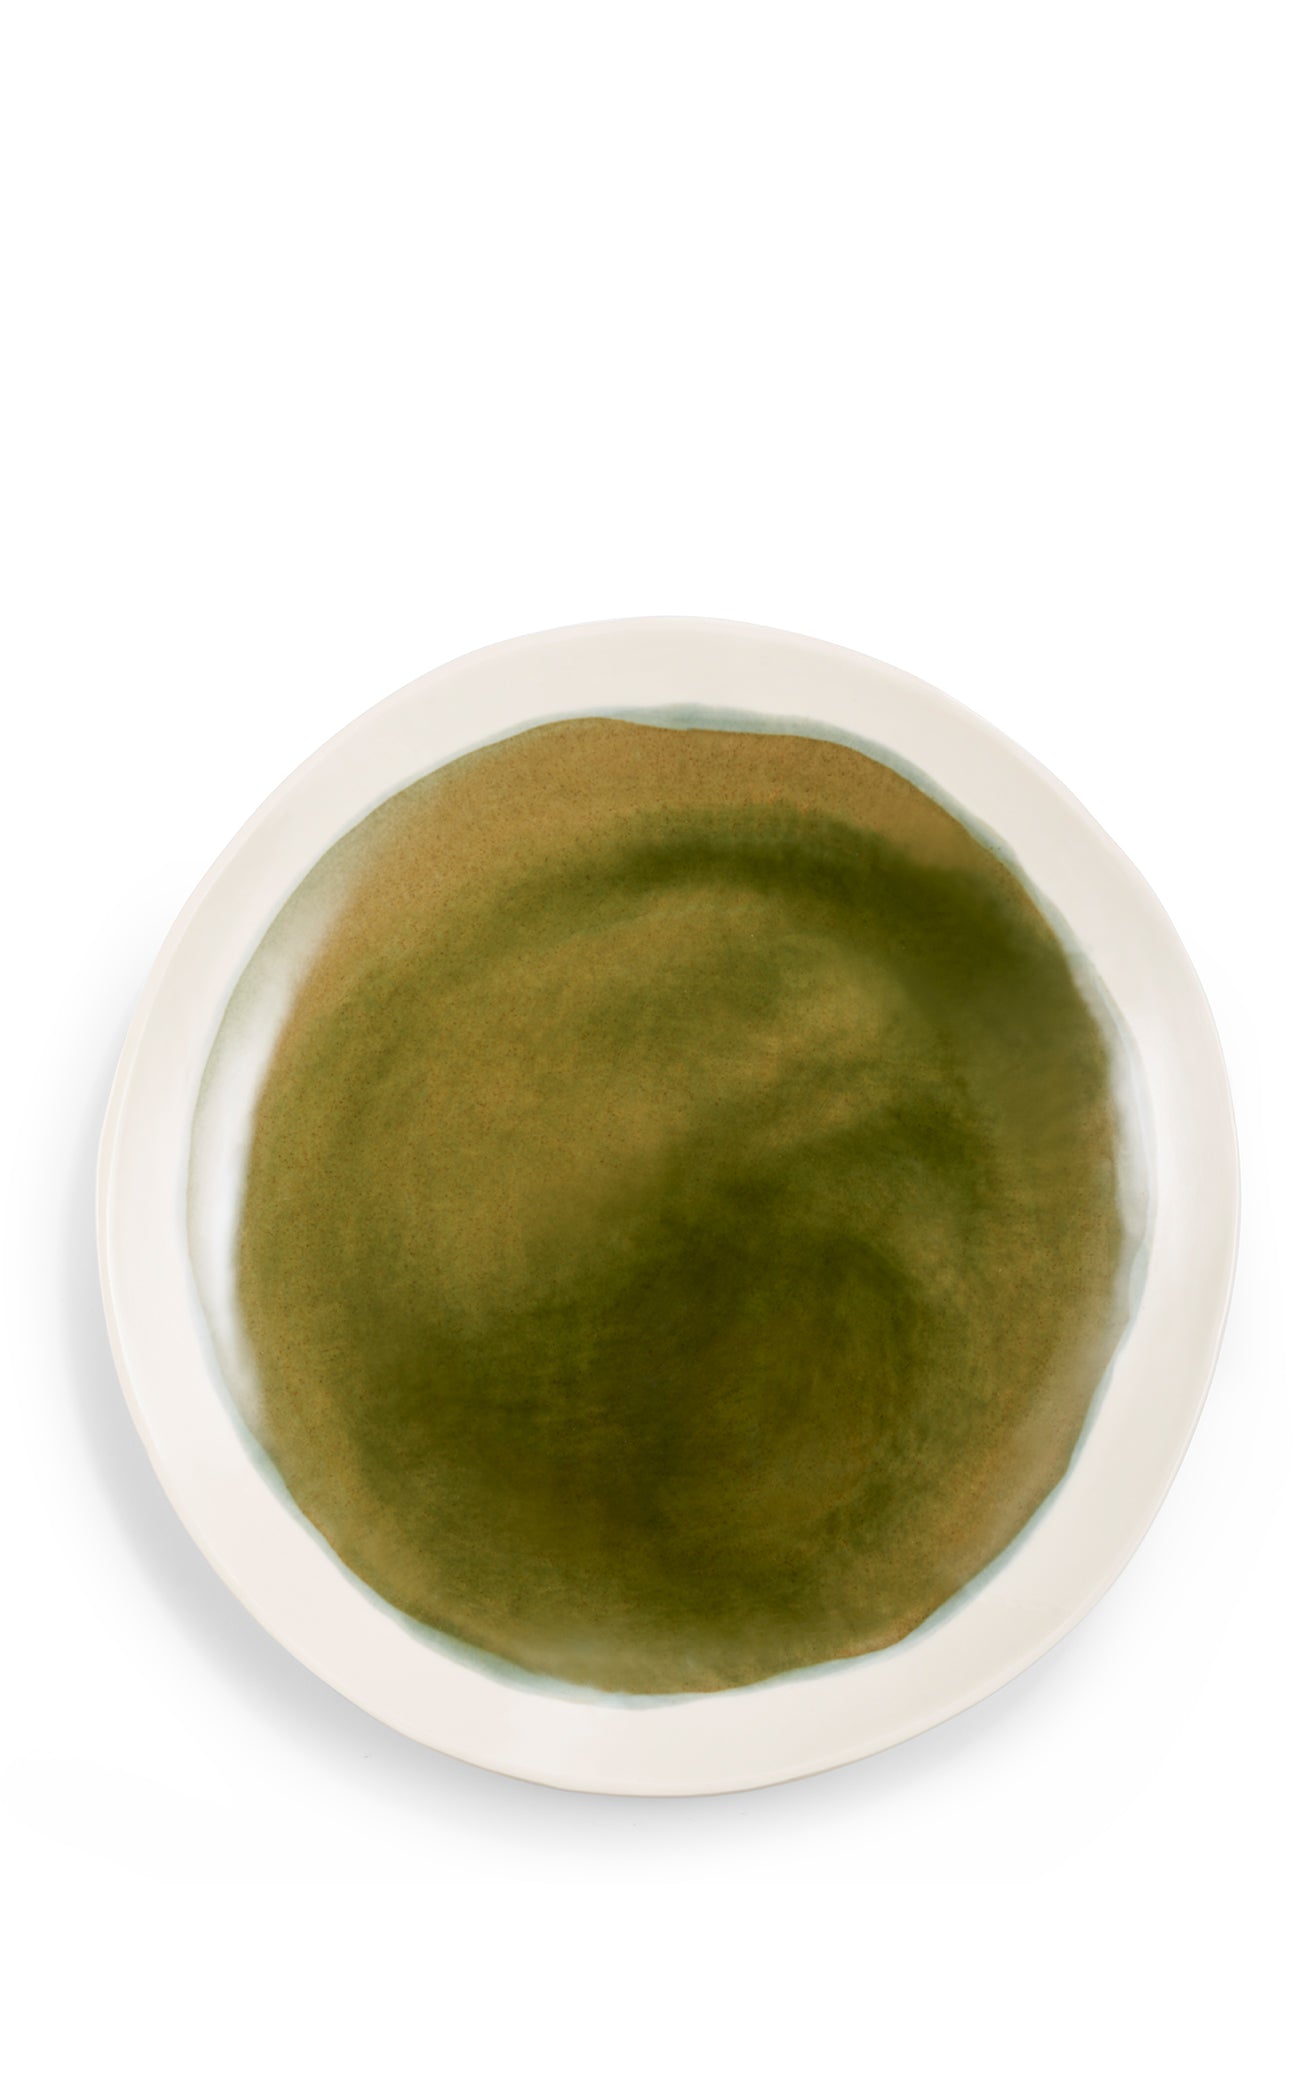 Handmade Porcelain Dinner Plate in Olive Green, 27cm